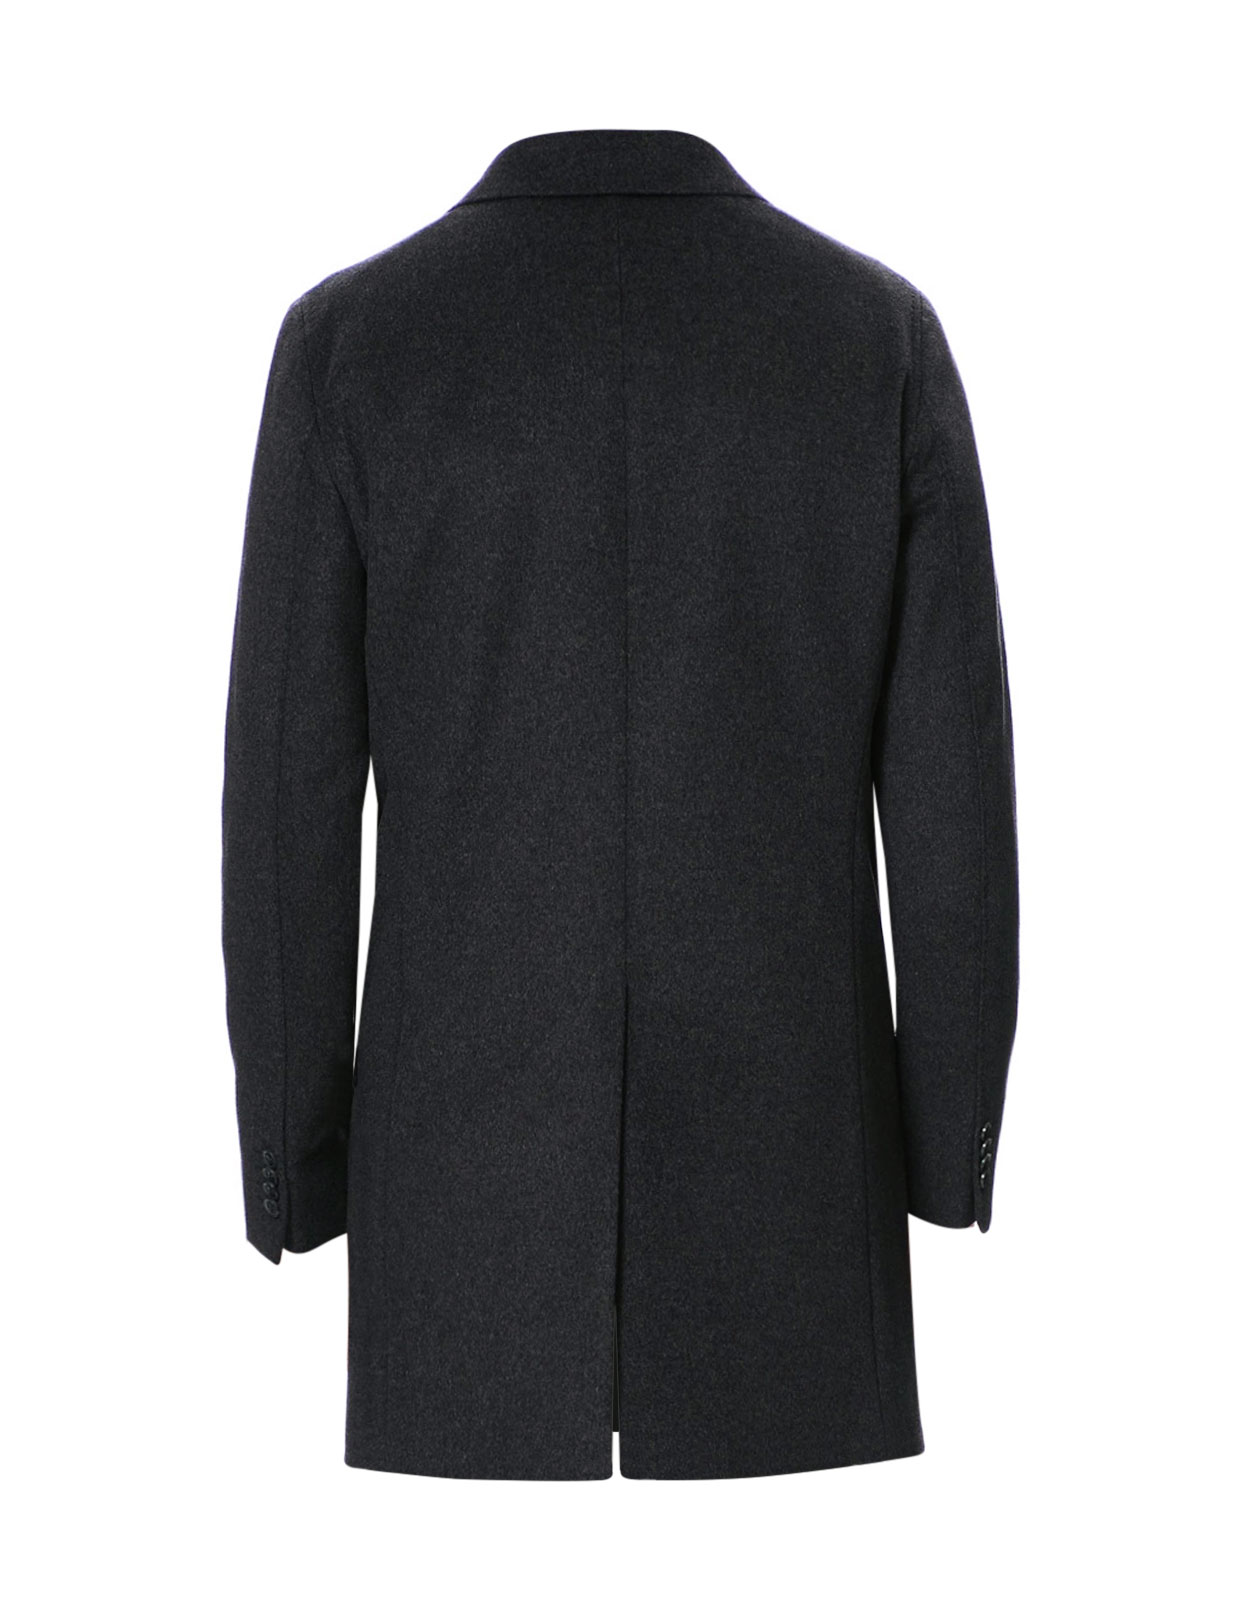 Storvik Coat Wool Cashmere Dark Grey